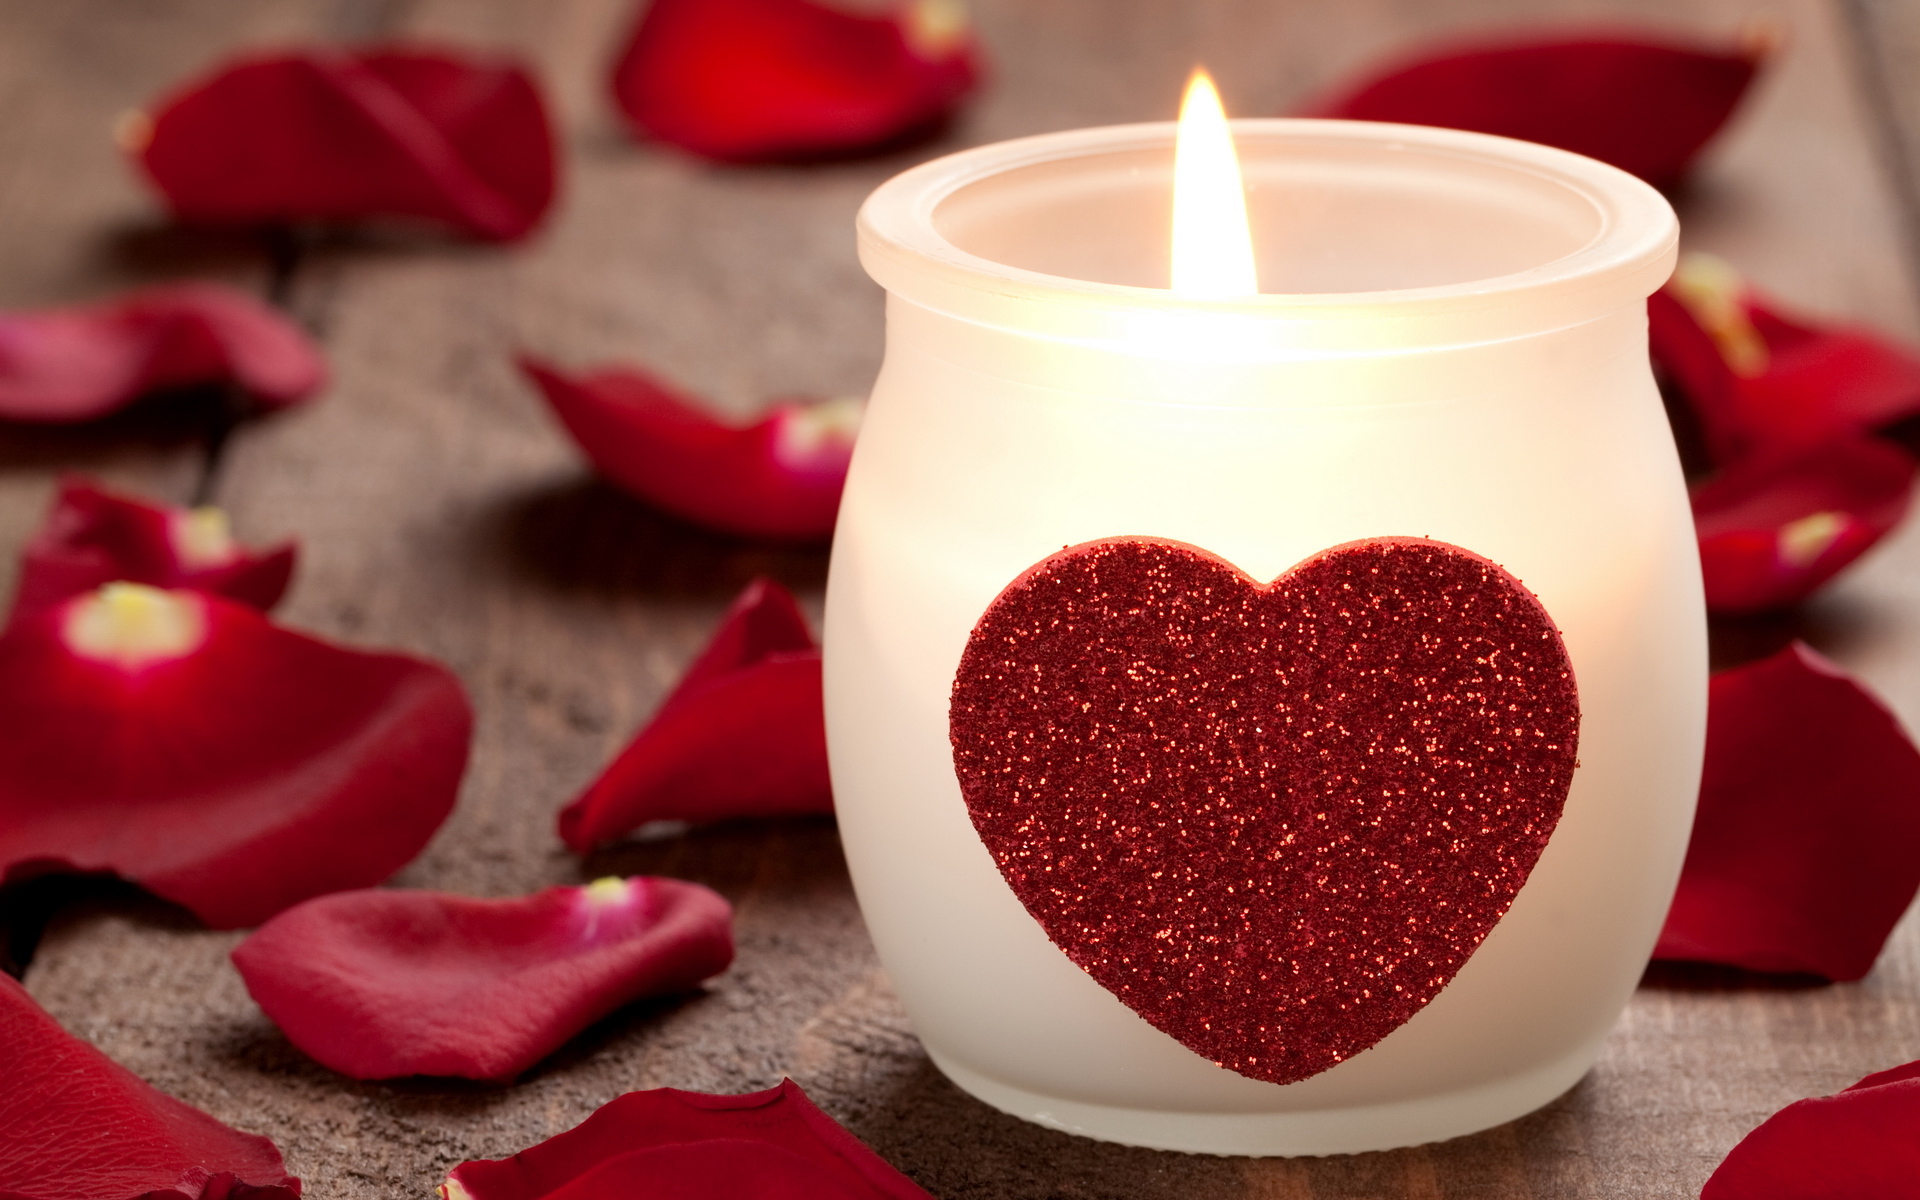 Скачать обои бесплатно День Святого Валентина (Valentine's Day), Праздники, Свечи, Сердца, Любовь картинка на рабочий стол ПК